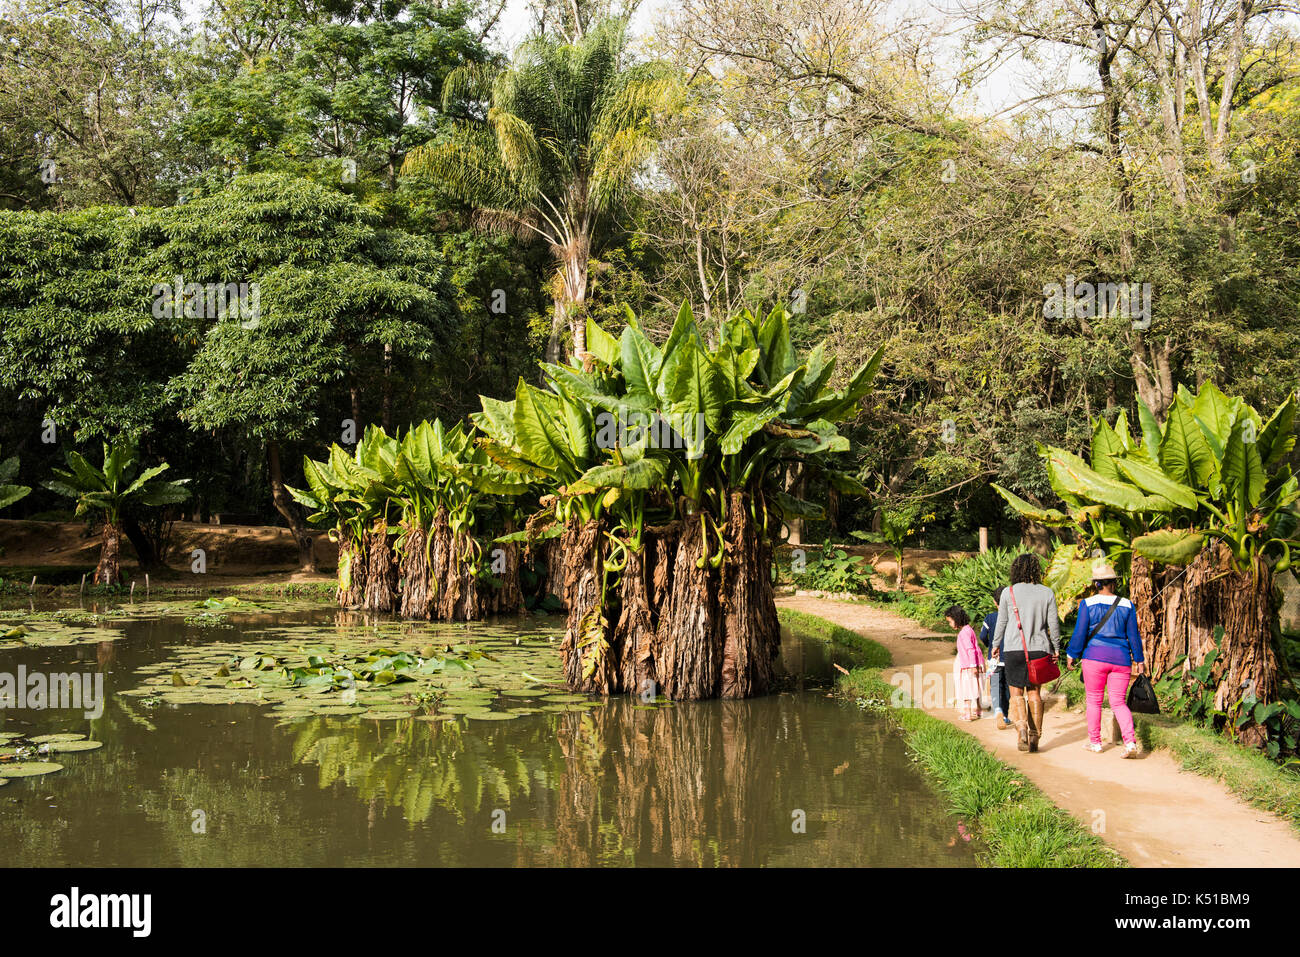 Lake in the Botanical and Zoological Garden of Tsimbazaza, Antananarivo, Madagascar Stock Photo